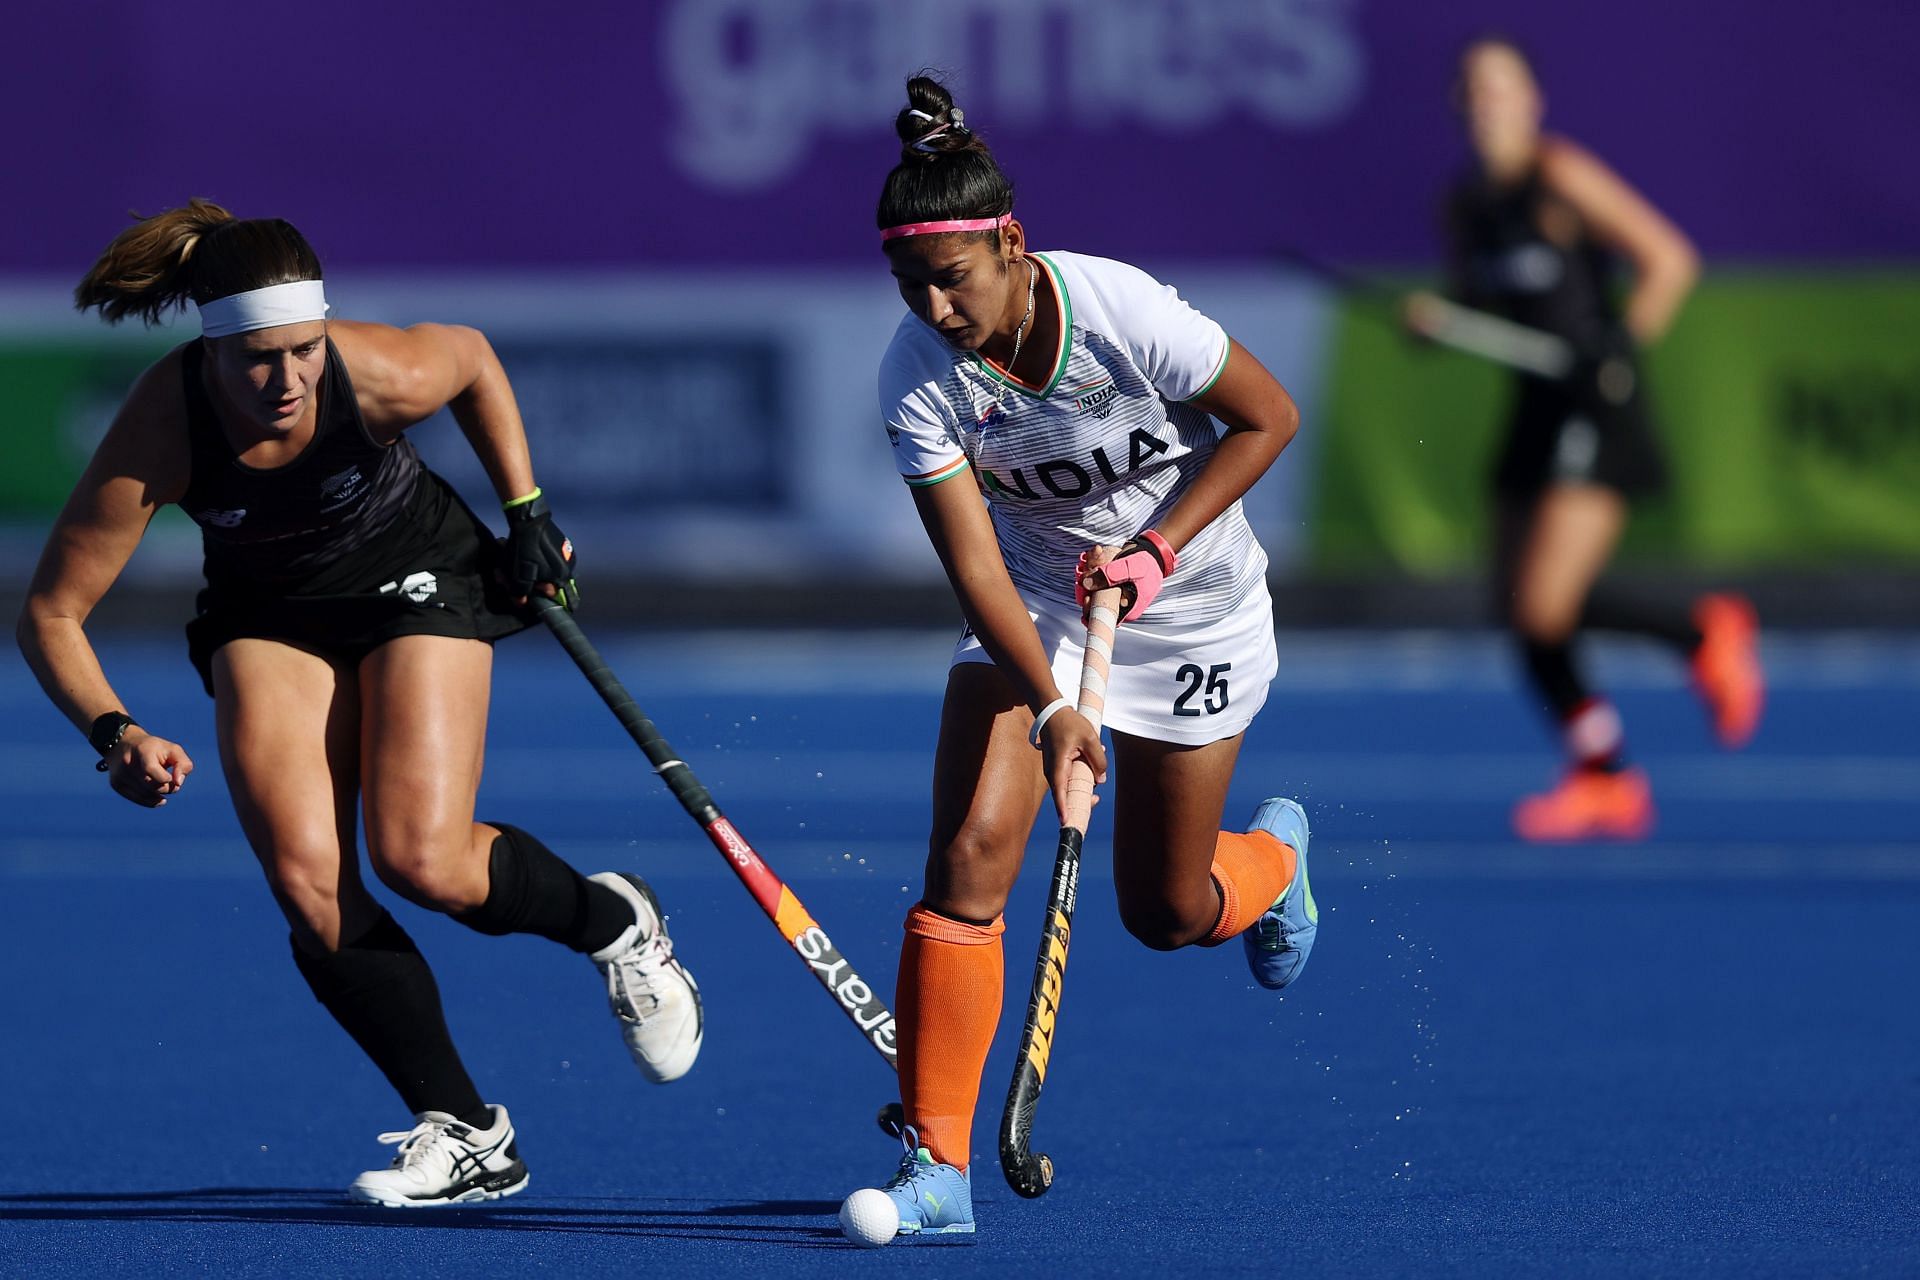 India takes on New Zealand at Ranchi on Sunday